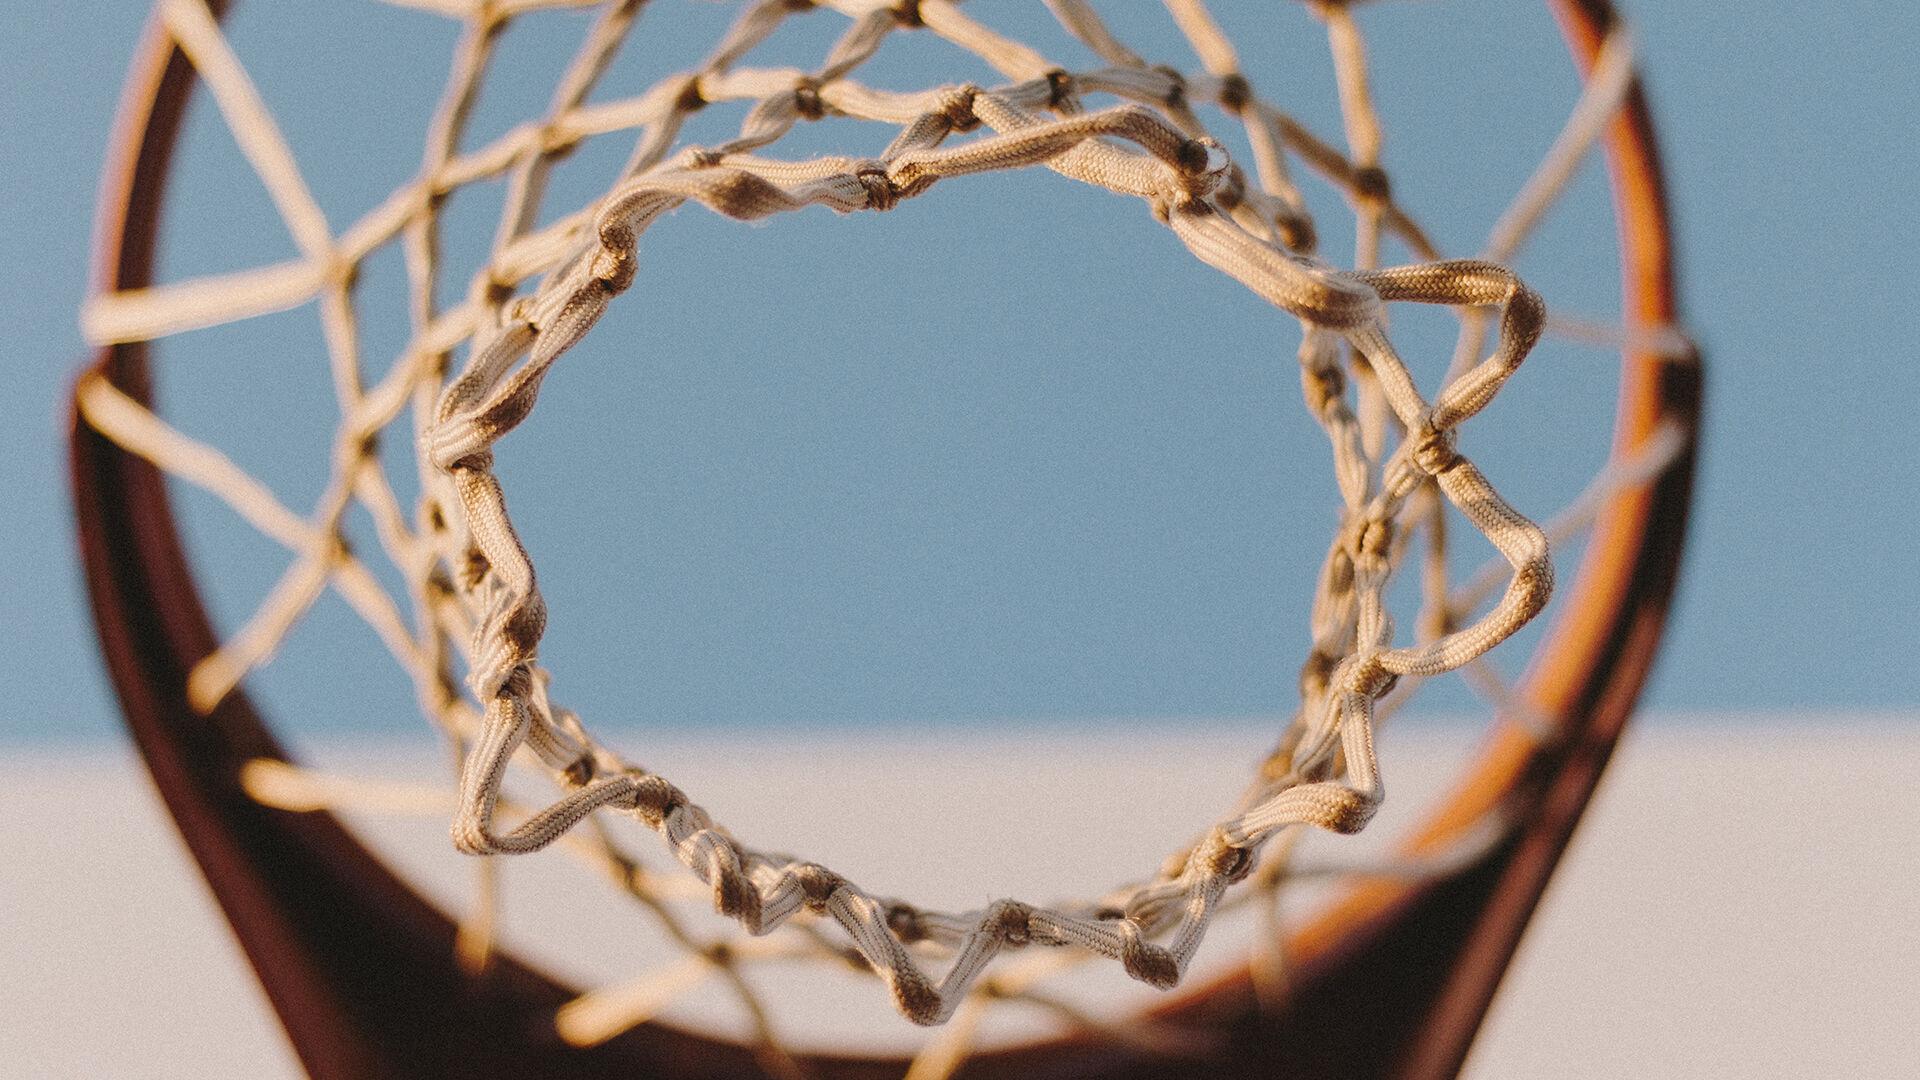 Abdul-Jabbar's Diamond Ring Celebrates His 38 Years as NBA Scoring